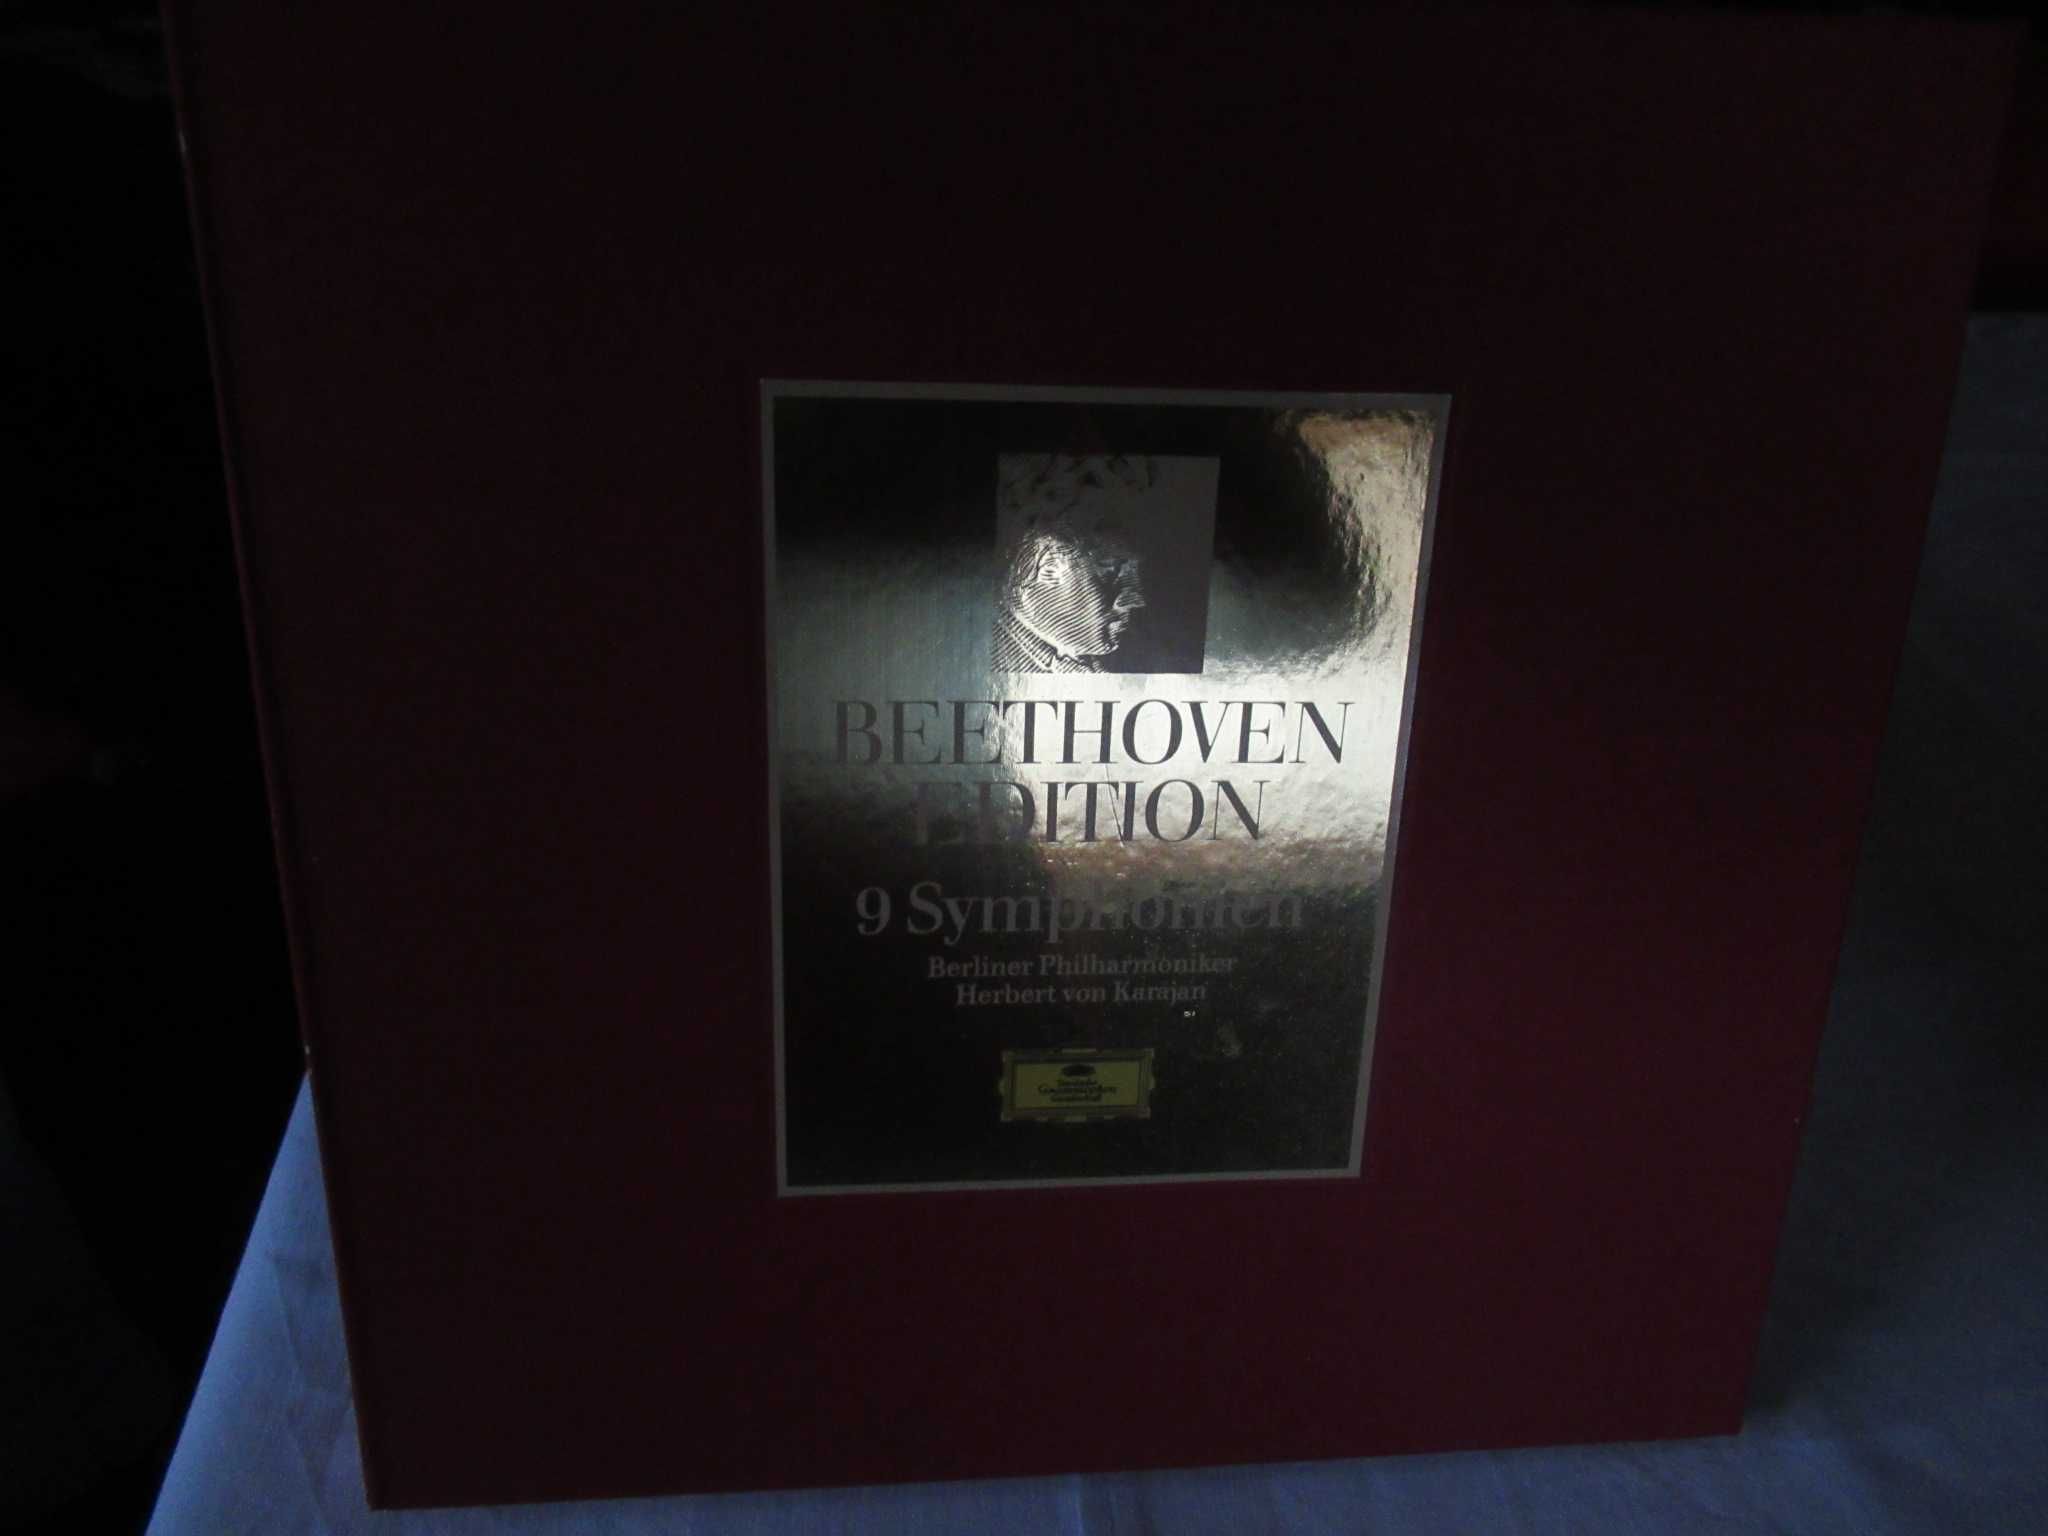 Discos Vinil Beethoven Edição completa